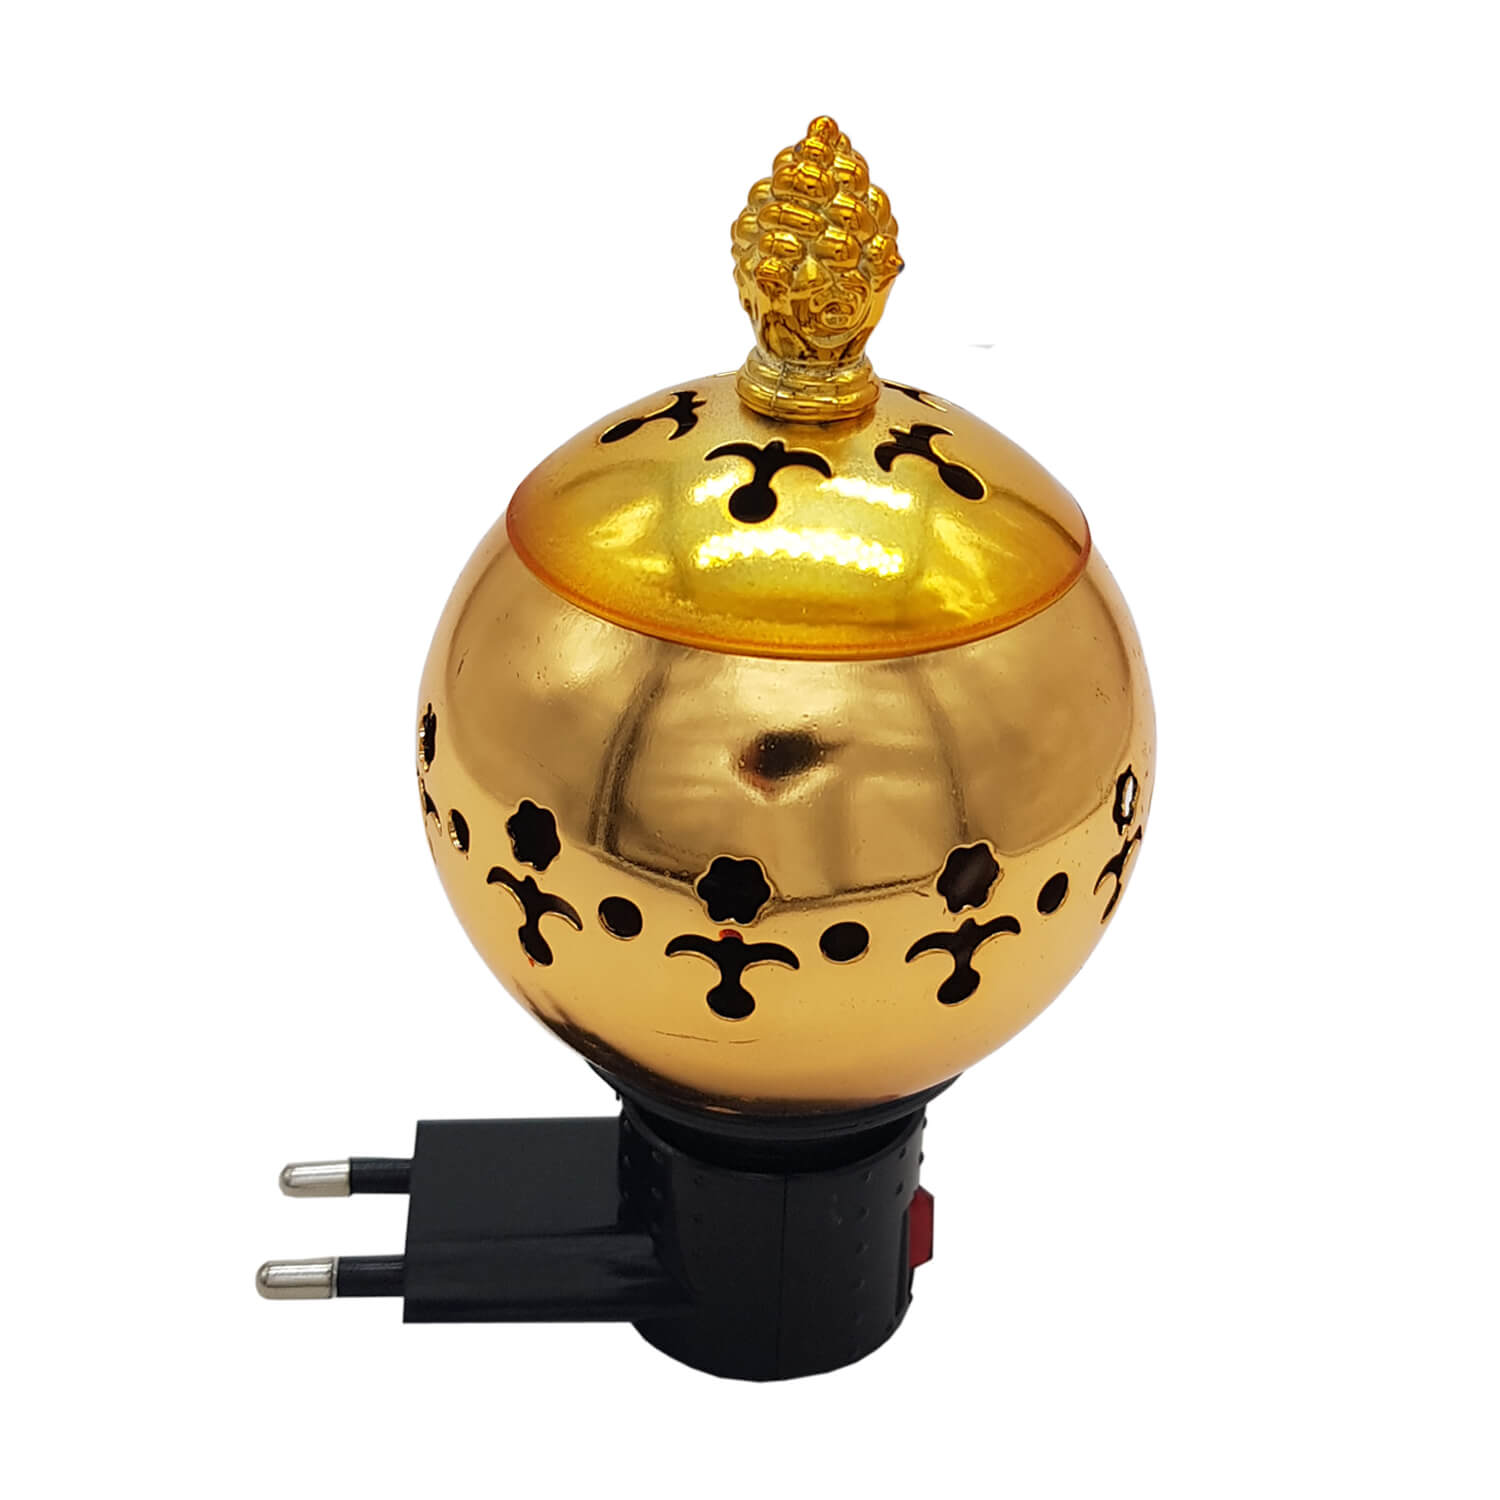 Exclusive Electrical Bakhoor Burner - Golden